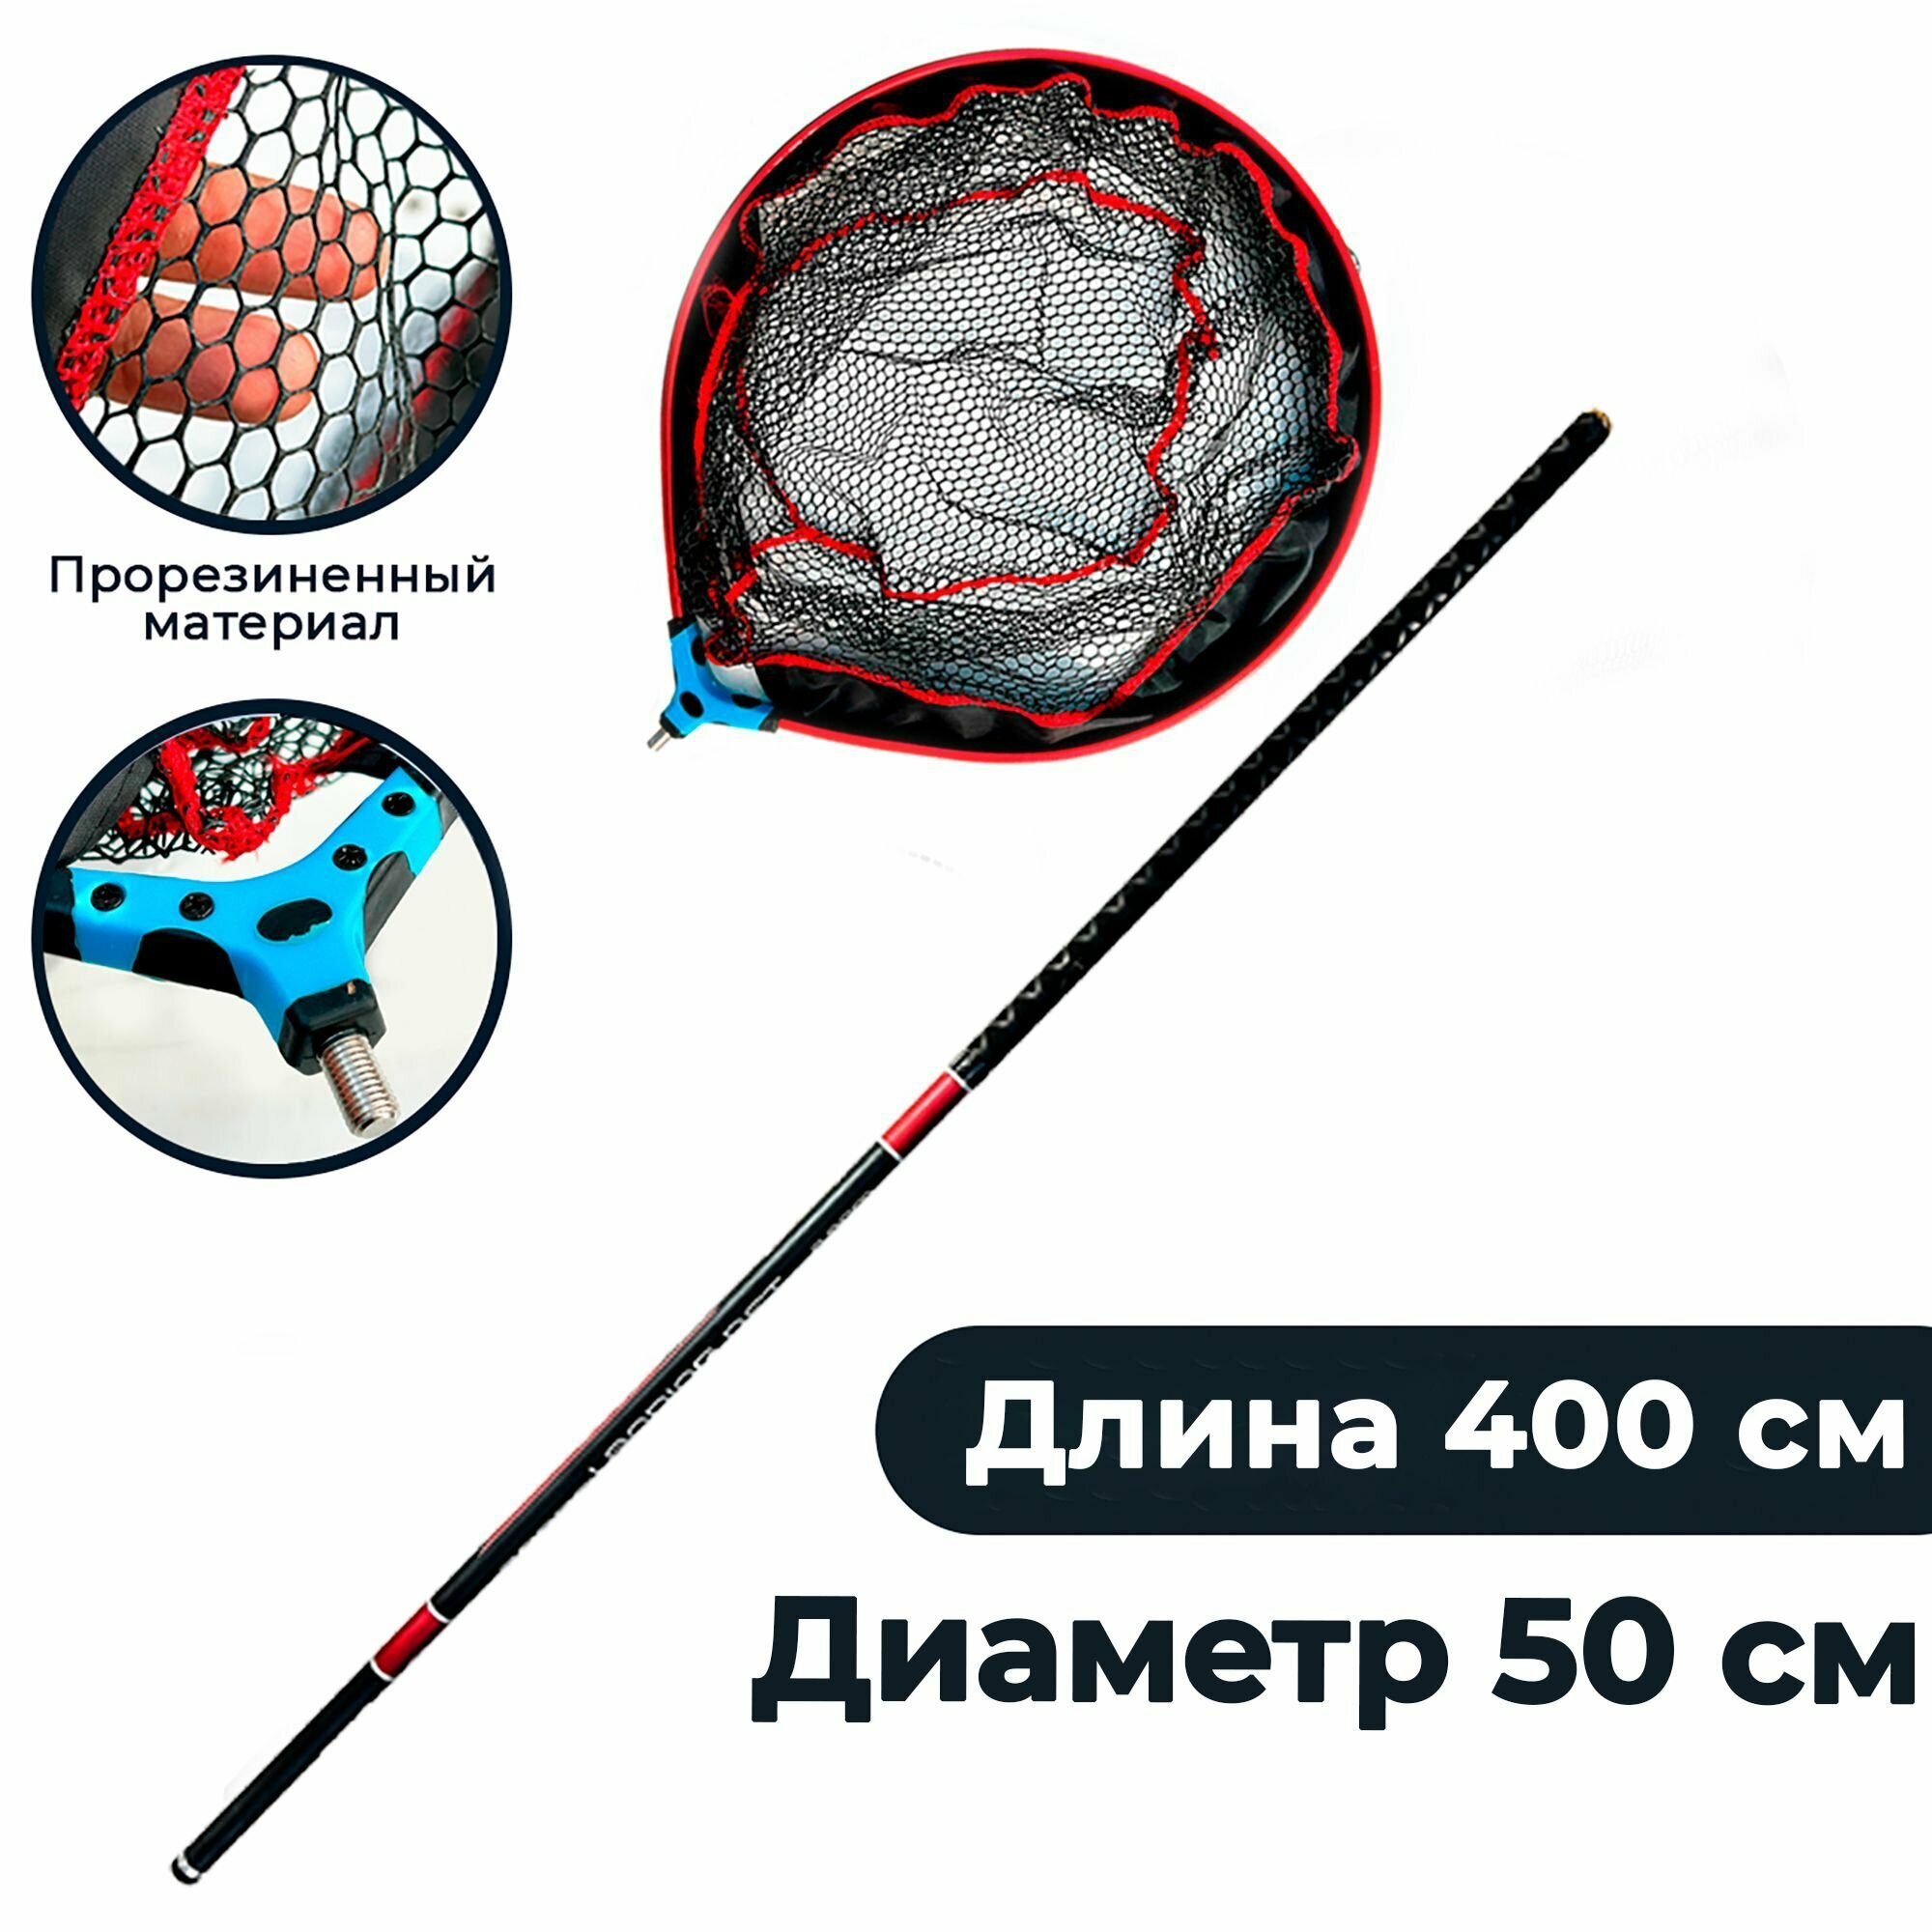 Подсак карповый голова 40 см с телескопической ручкой карбон 4 метра